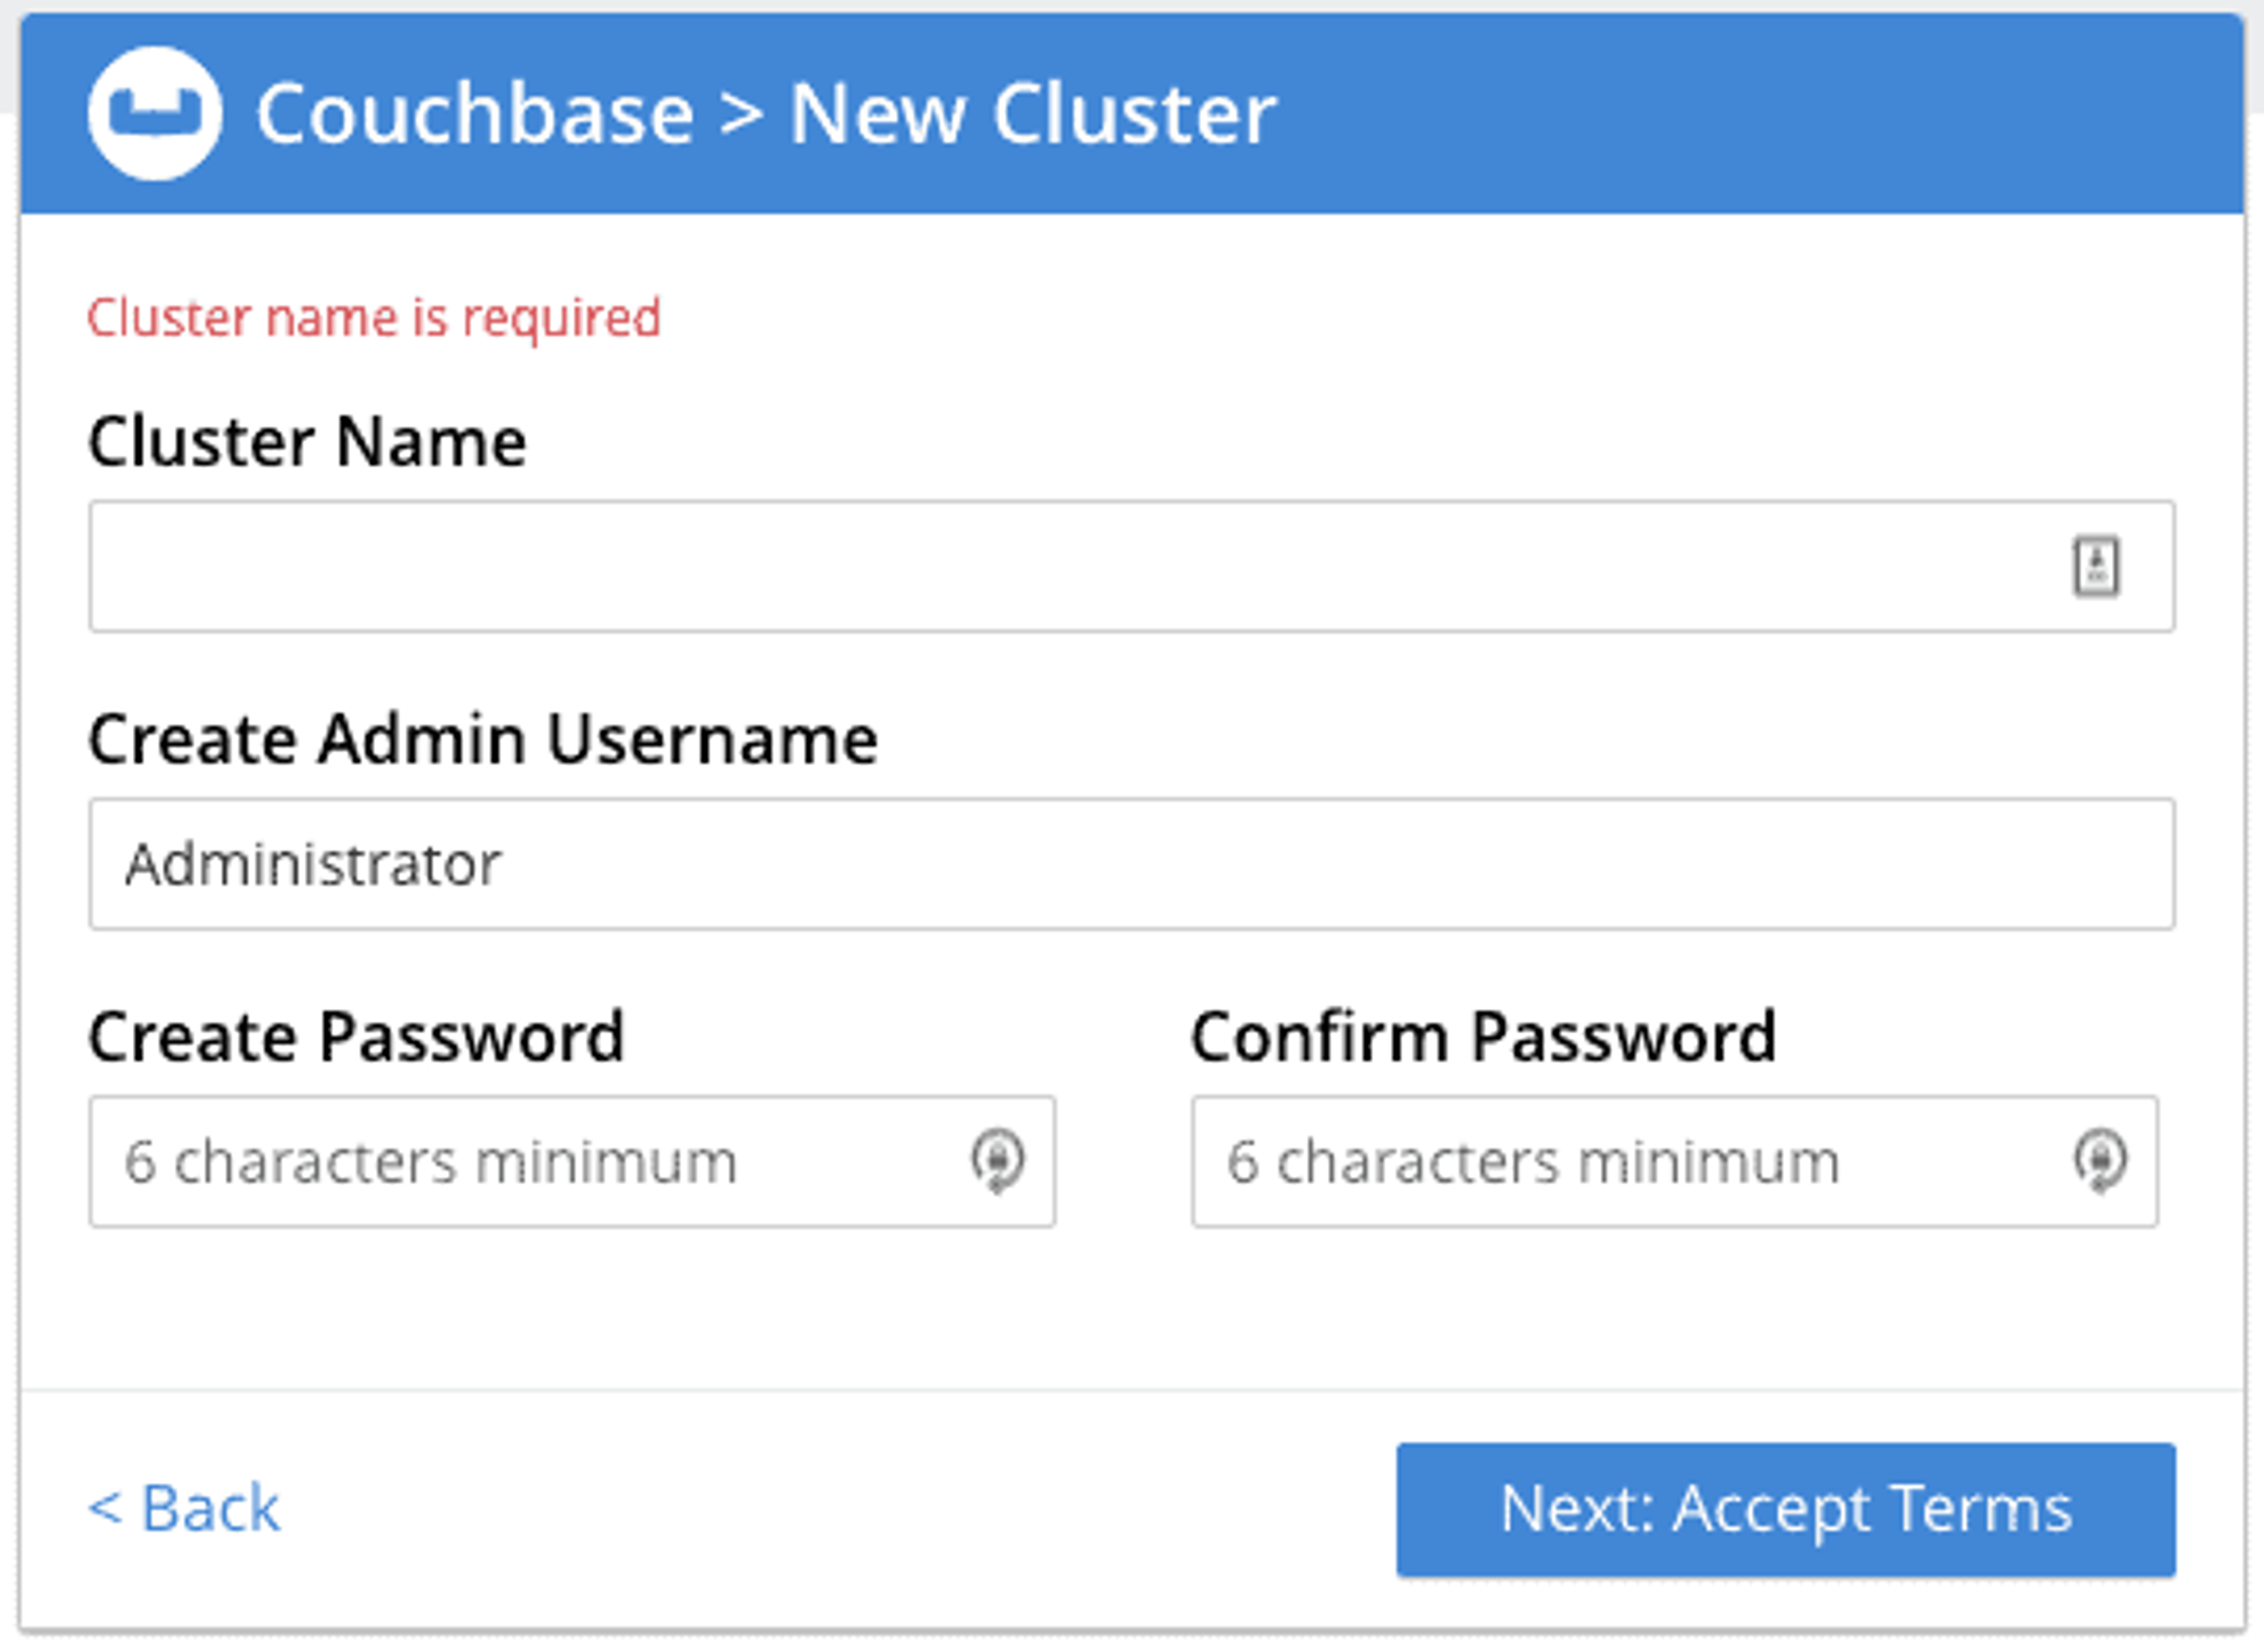 Terminez la configuration en nommant votre cluster et configurant le mot de passe d'administration